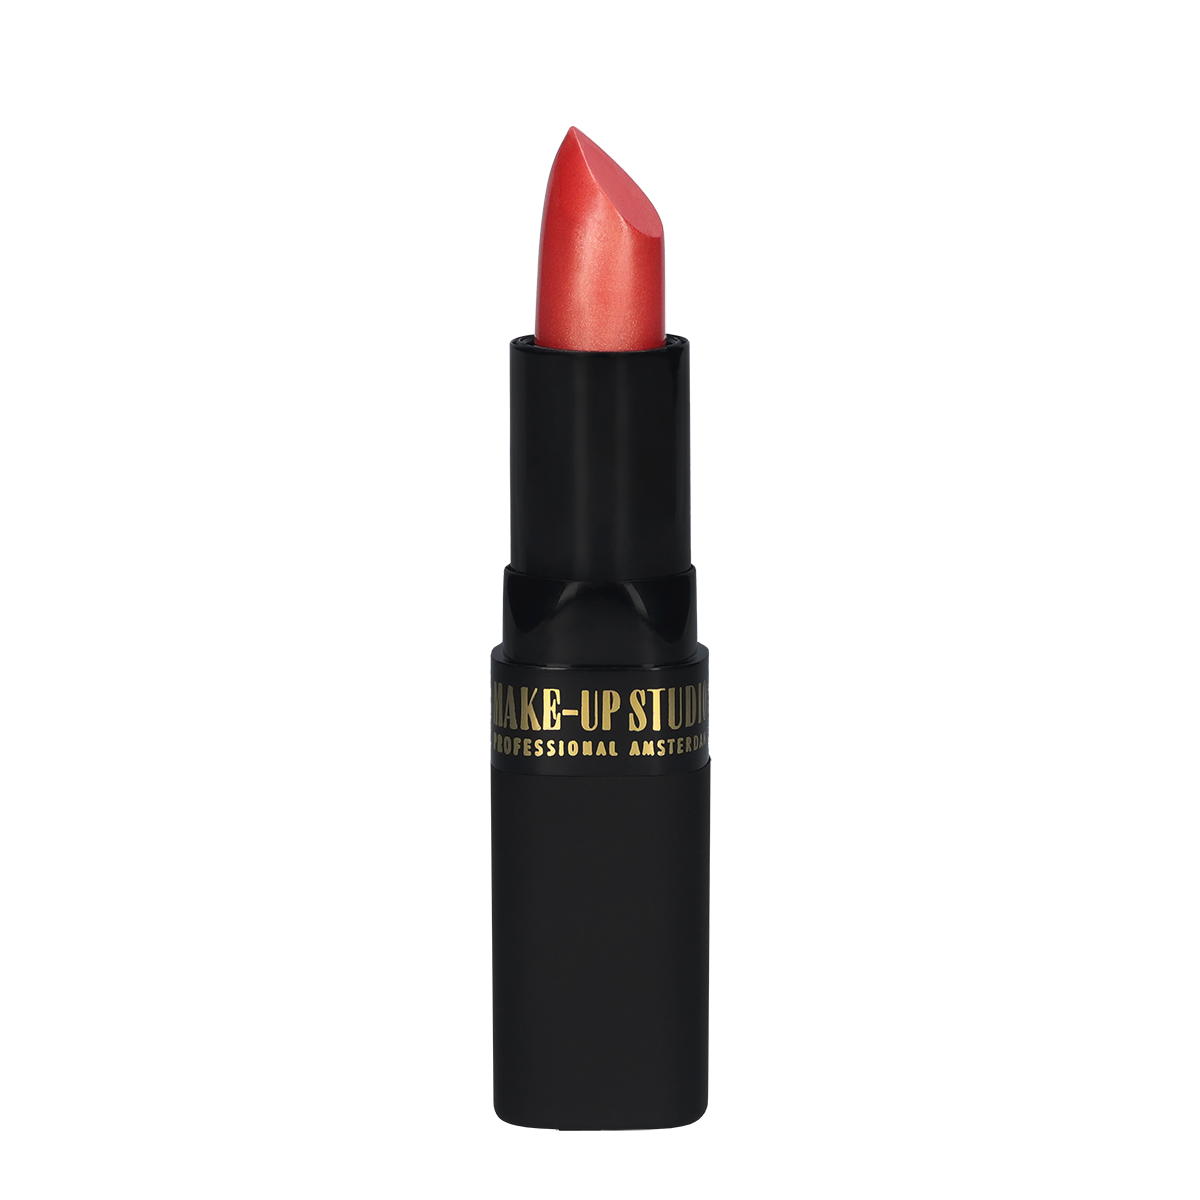 Make-up Studio Lipstick Lippenstift - 32